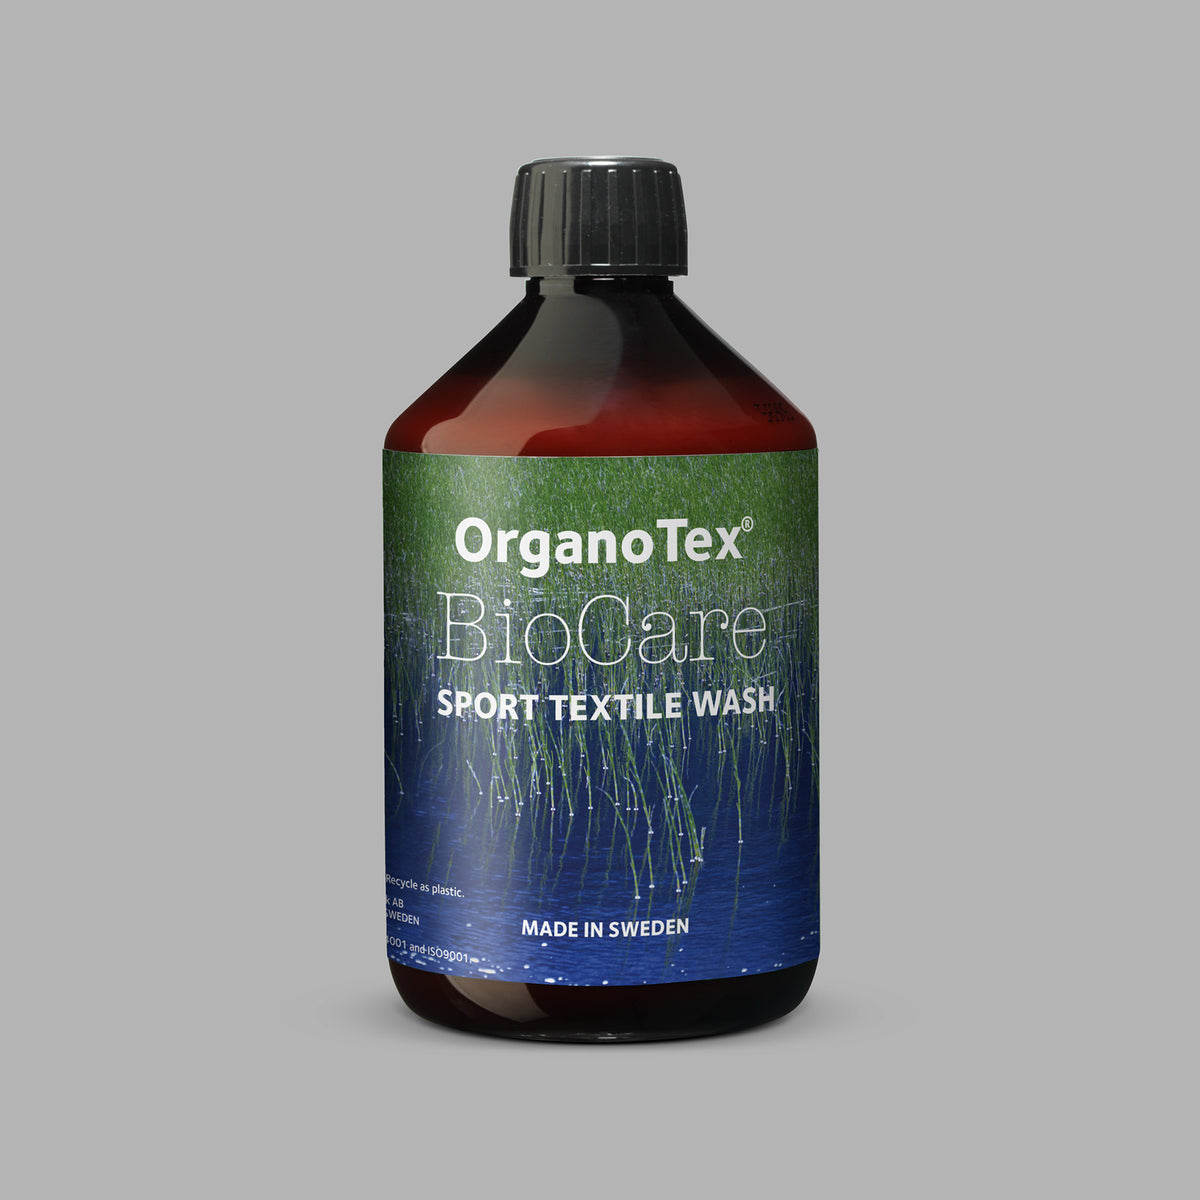 OrganoTex BioCare Sport Textile Wash. Til þvottar á útivsitarfatnaði